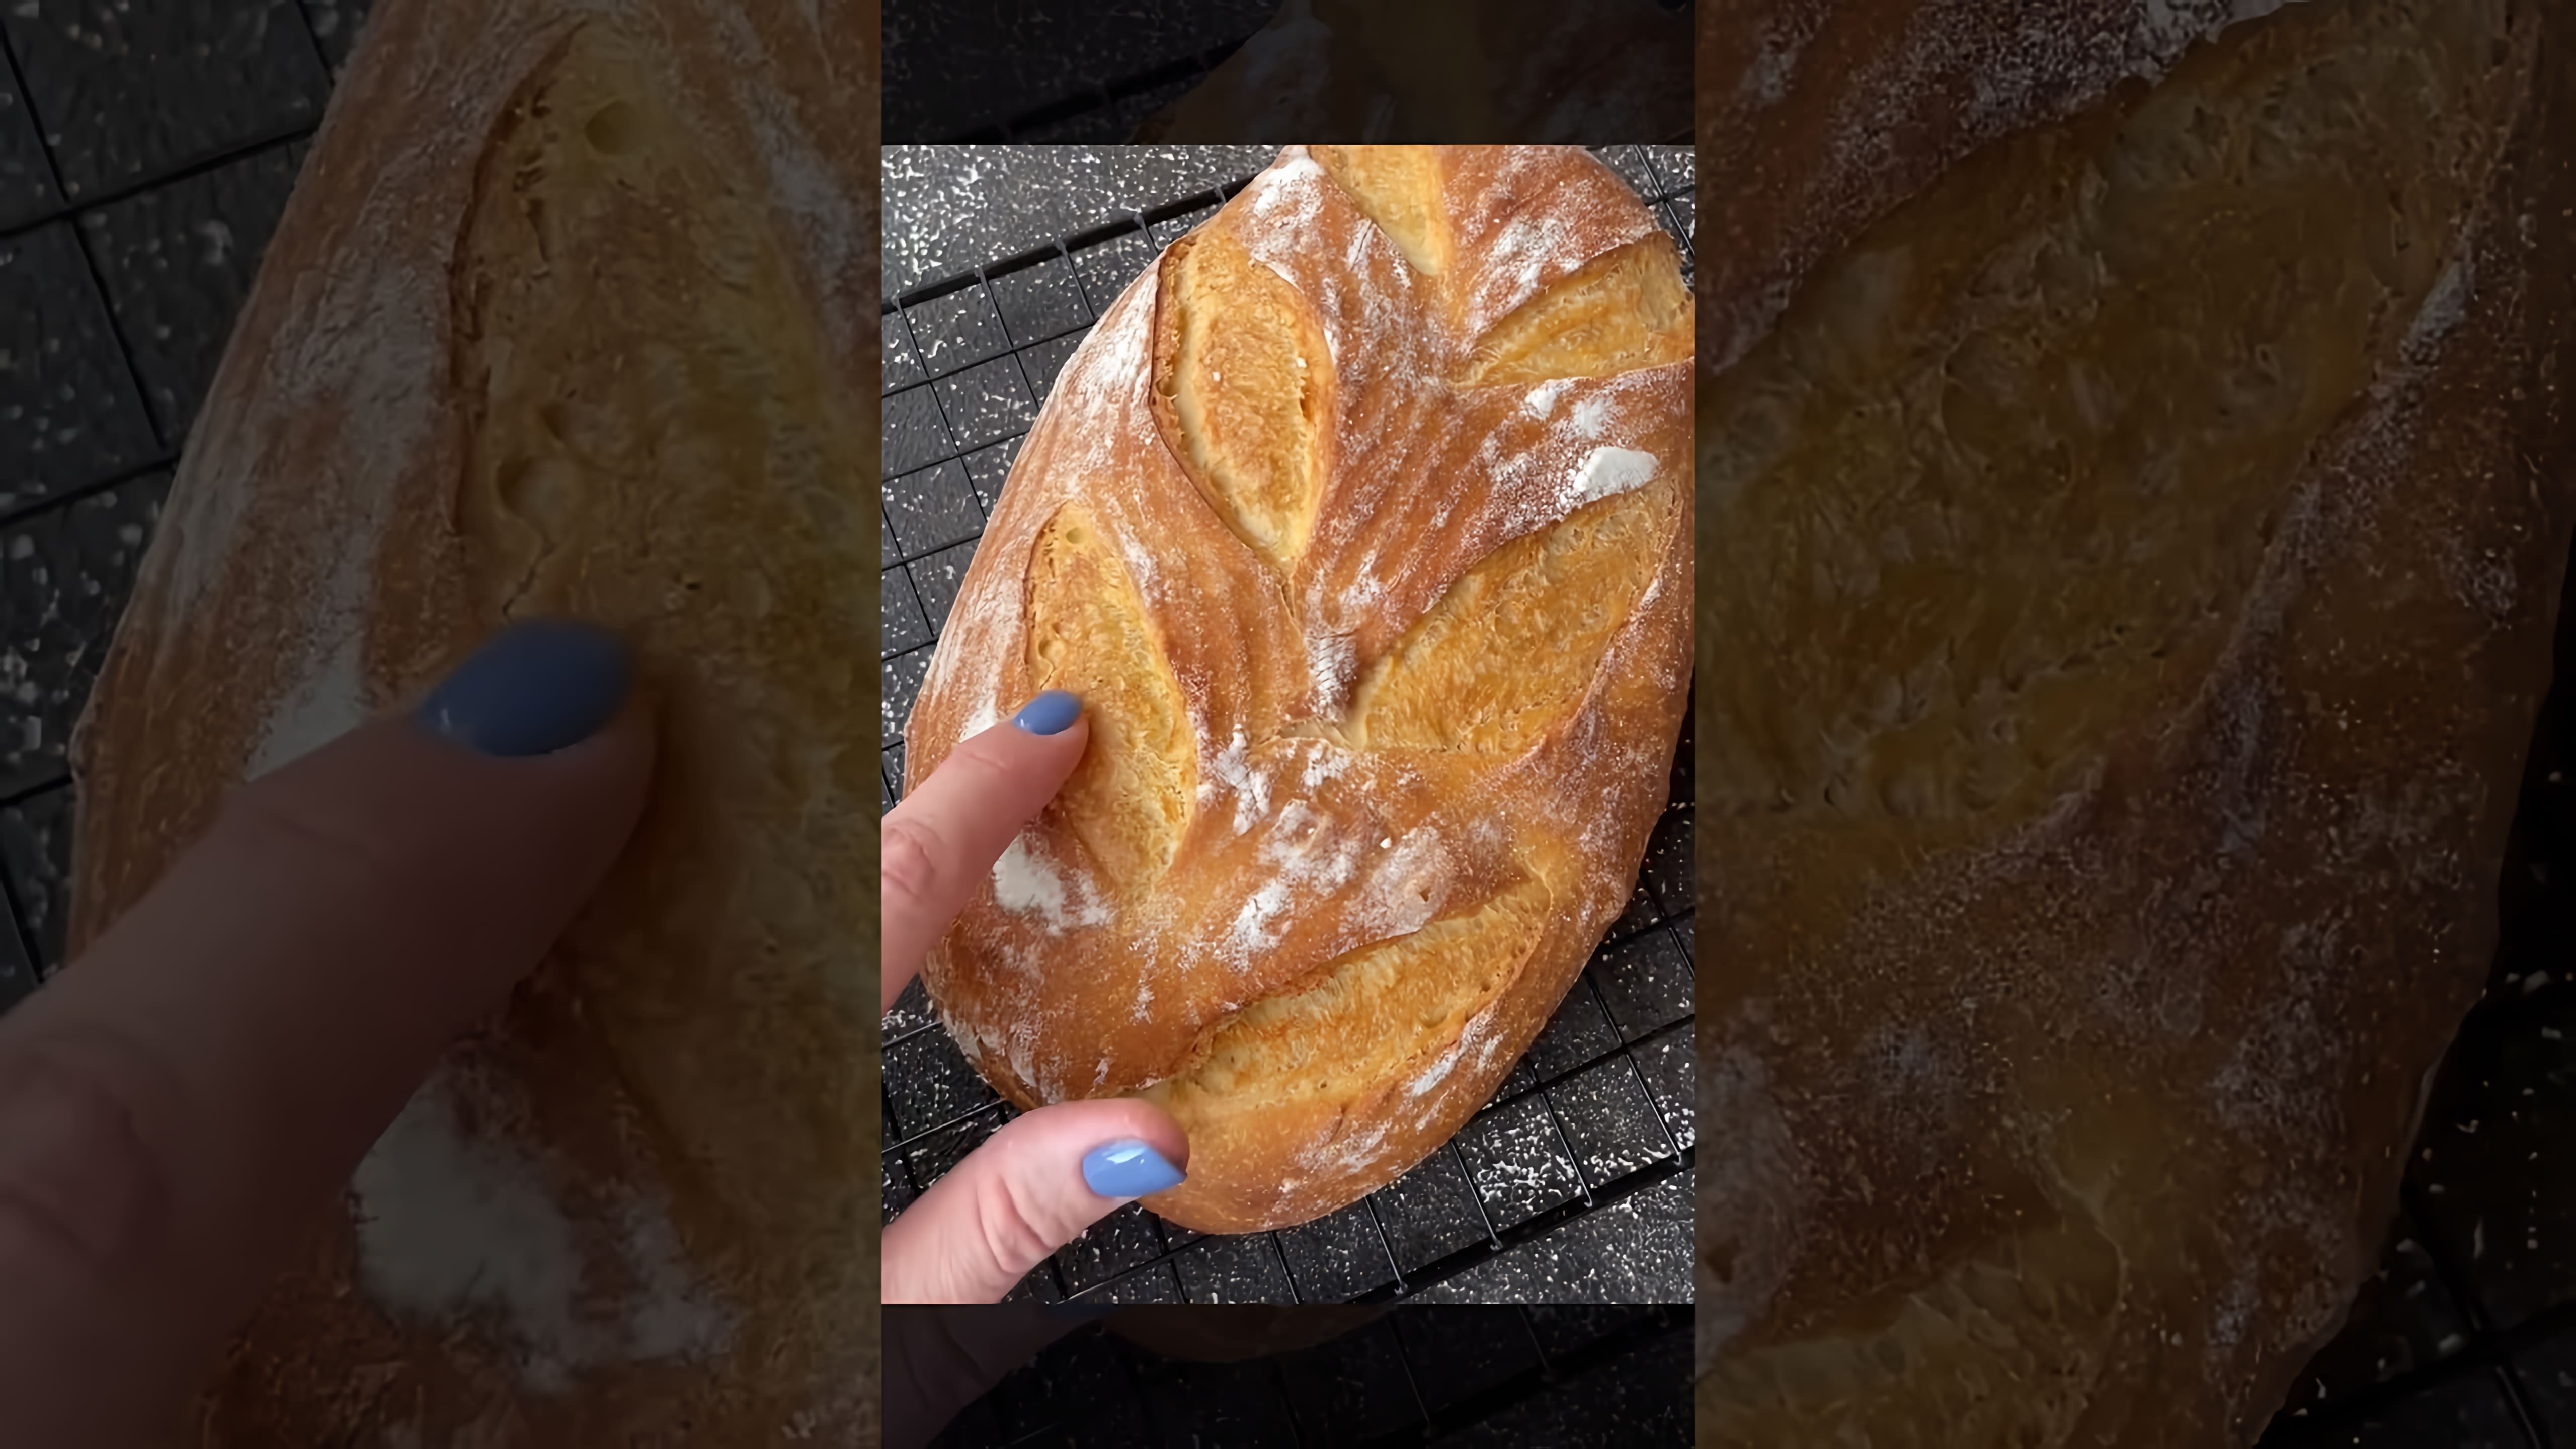 КУКУРУЗНЫЙ ХЛЕБ 🌽Рецепт🌽 CORN BREAD recipe

В этом видео-ролике я покажу вам, как приготовить вкусный кукурузный хлеб